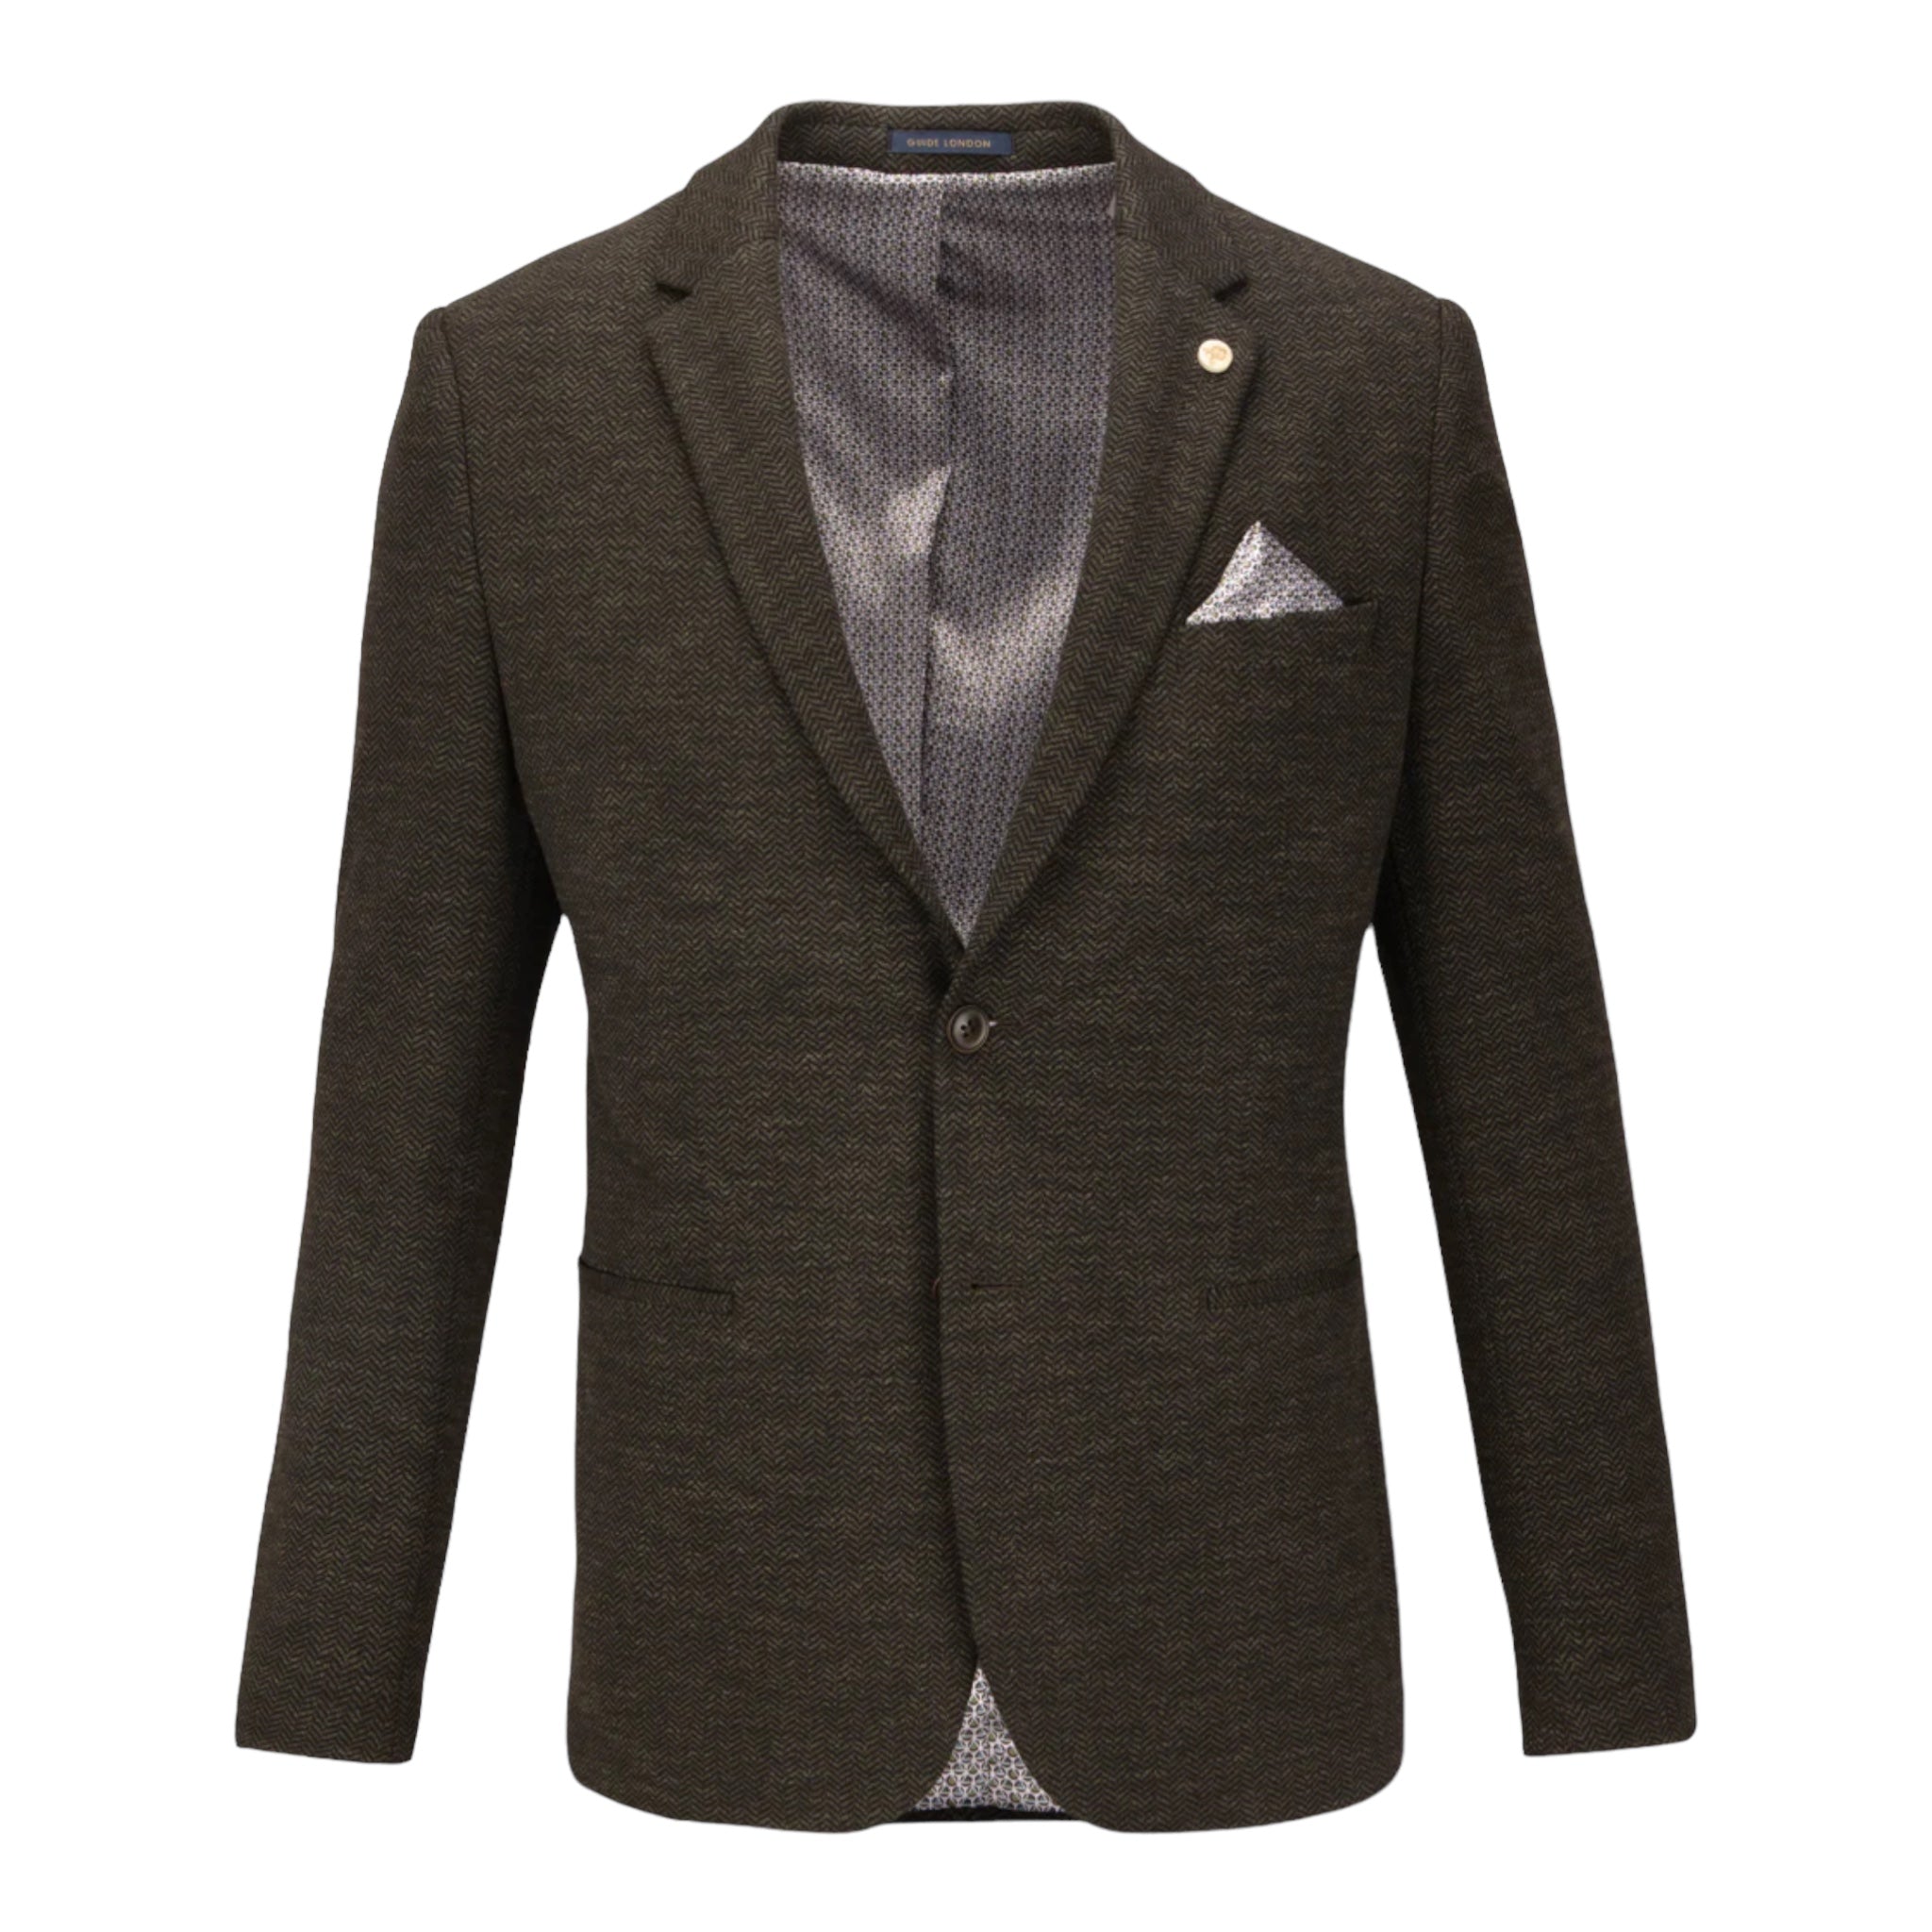 Guide London JK3558 OliveHerringbone Tweed Jacket